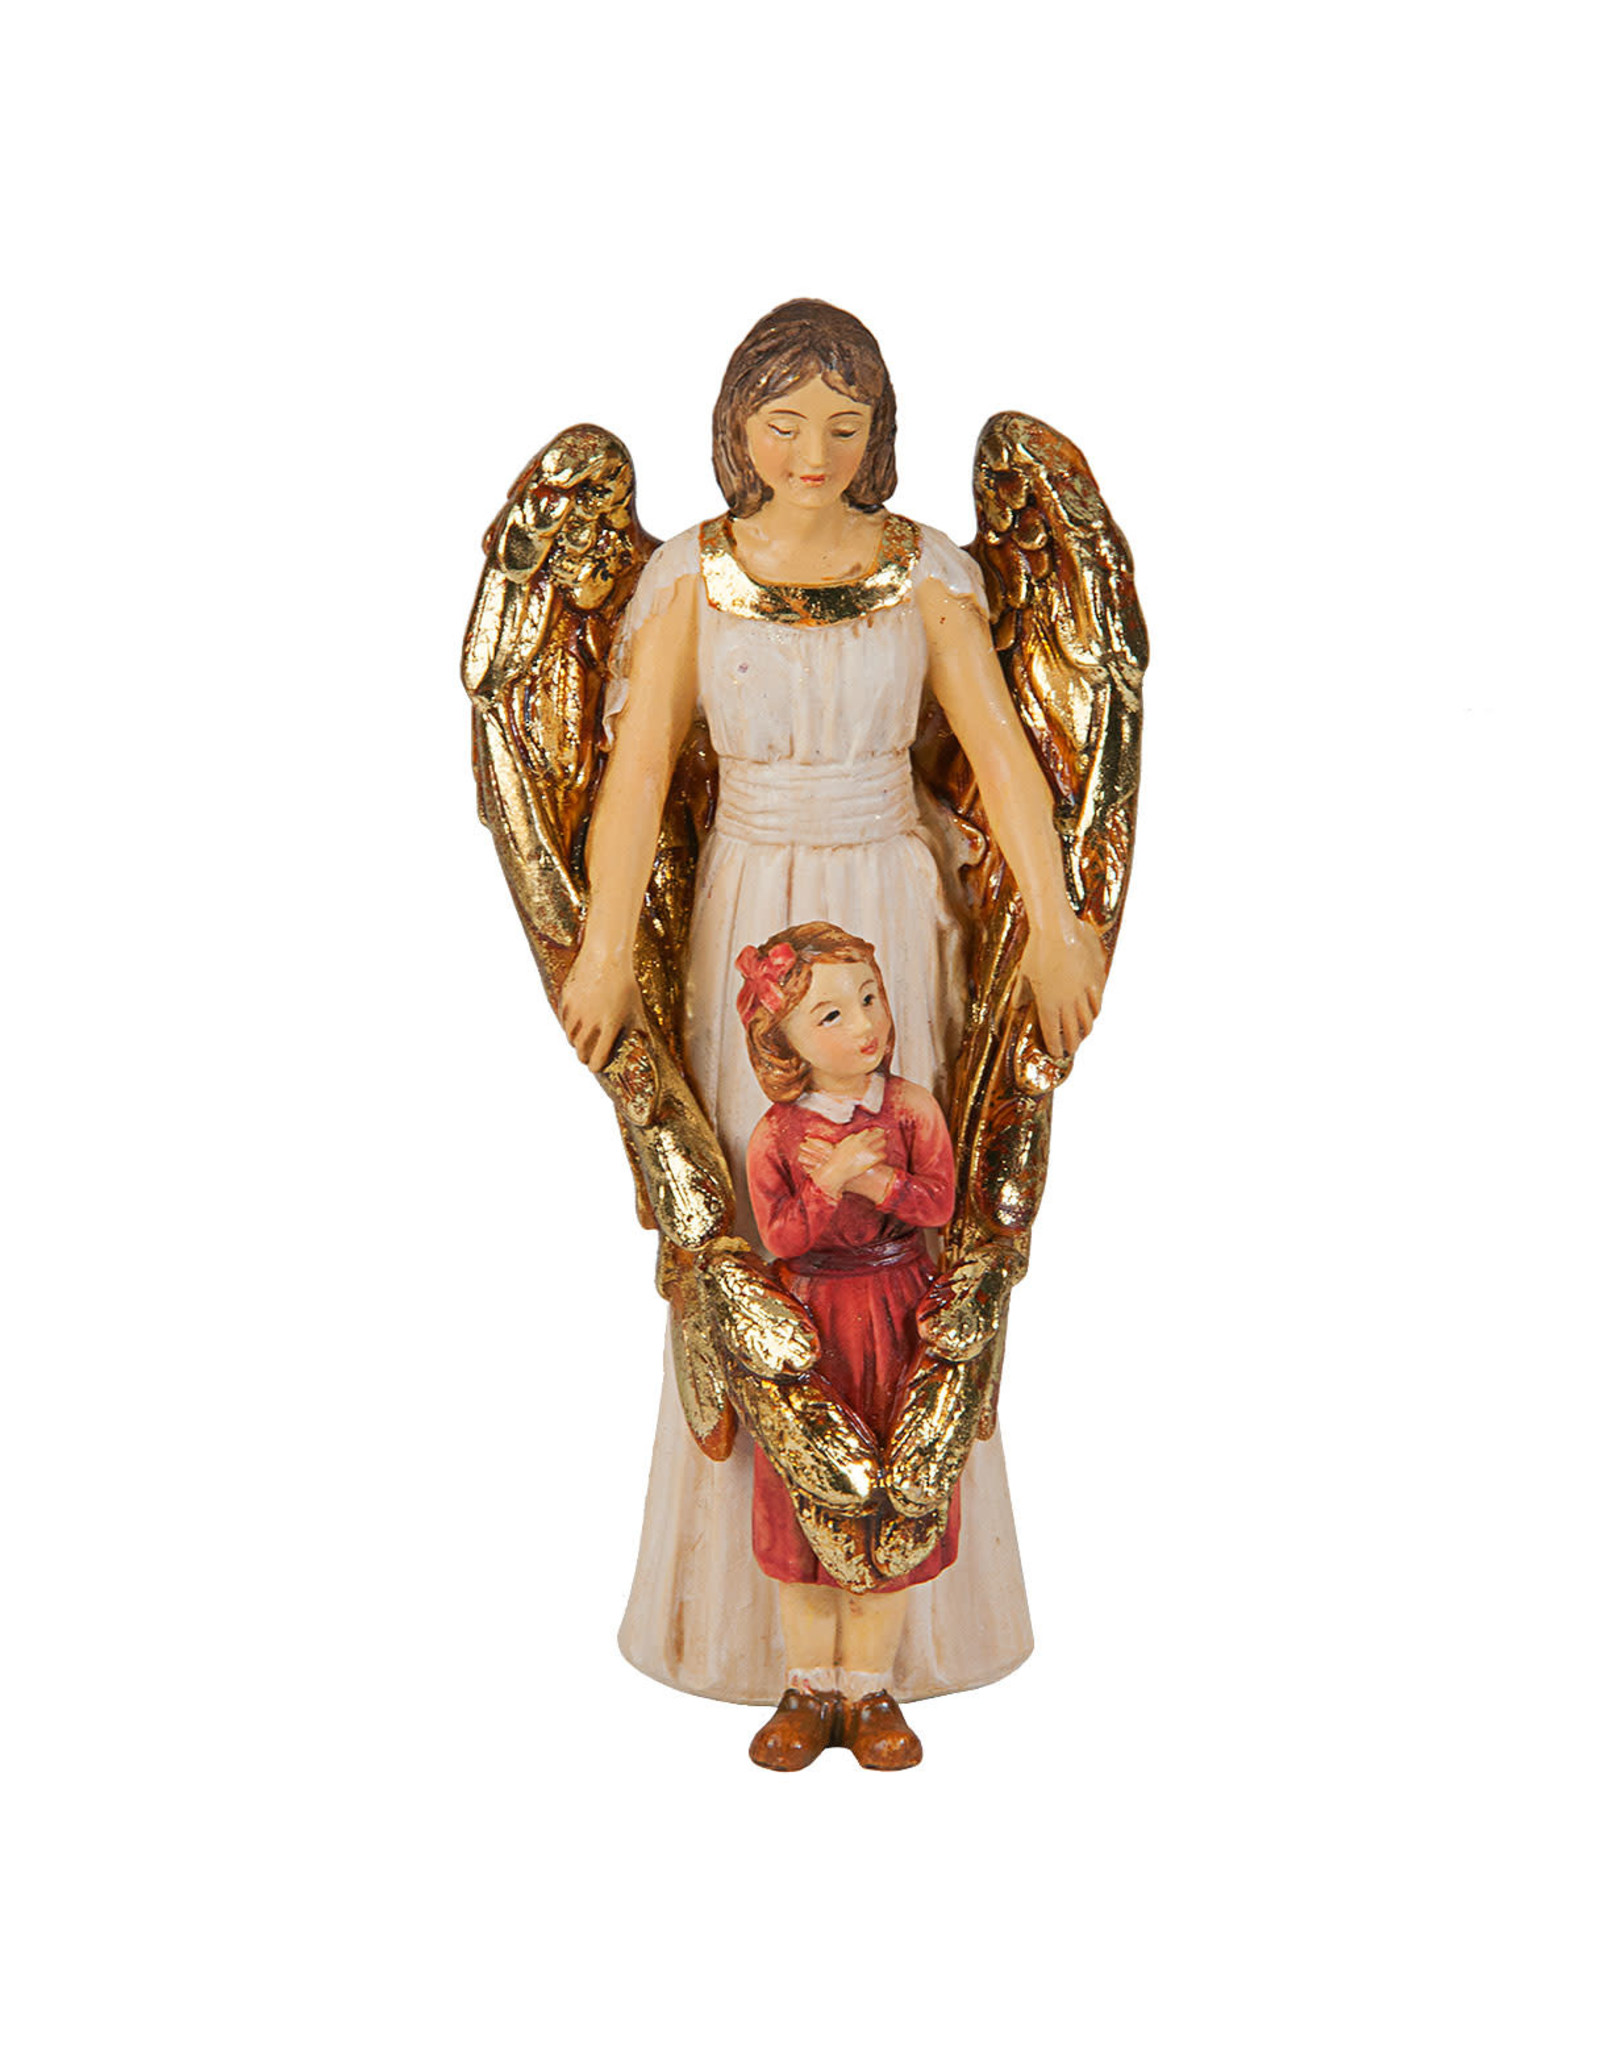 Hirten Patron Saint Statue - Guardian Angel (Little Girl)